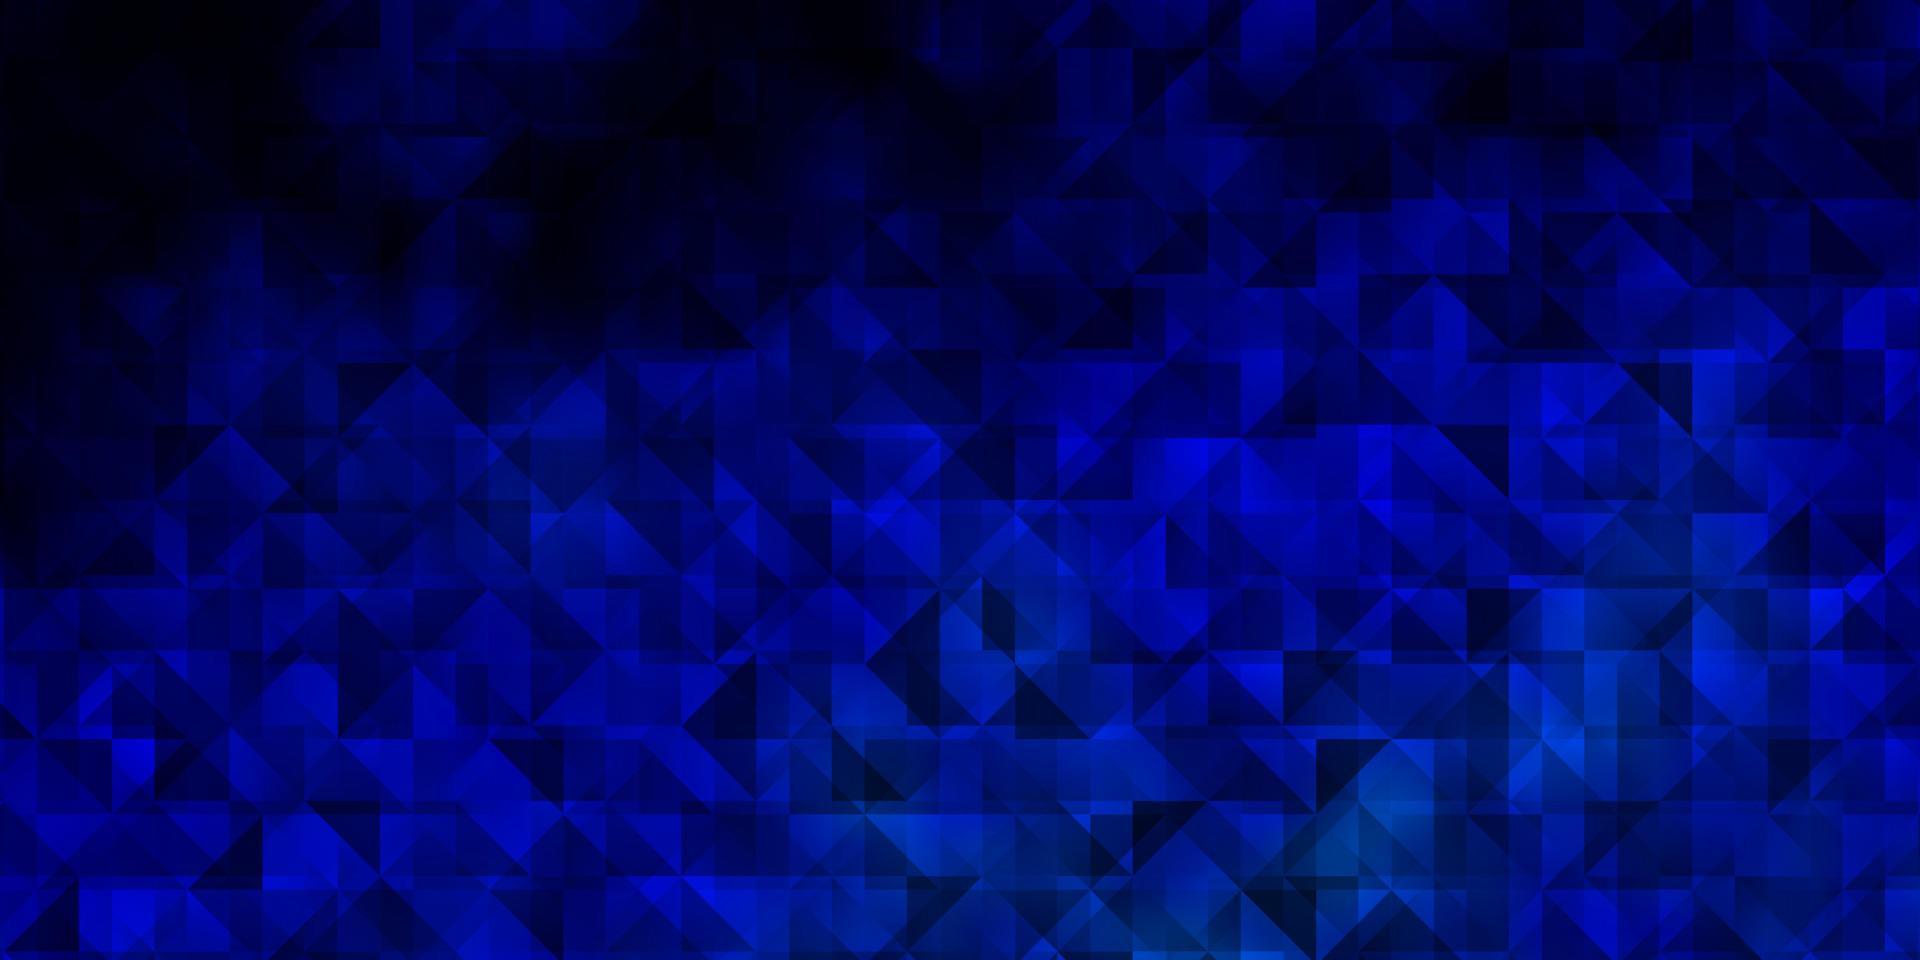 texture de vecteur bleu clair avec un style triangulaire.